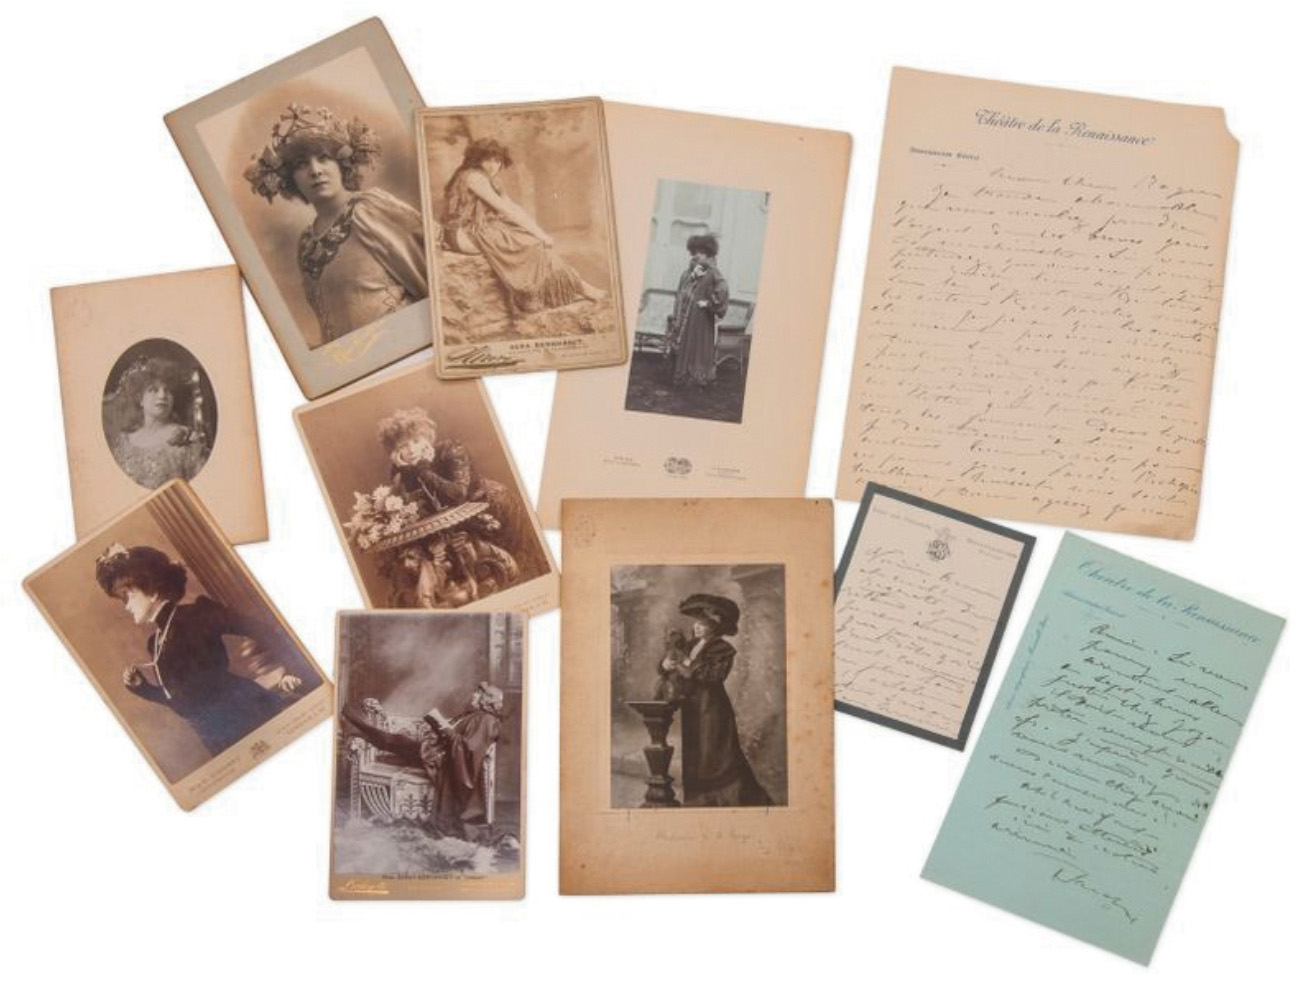 Ensemble de documents, lettres photographies, dessins, programmes et contrats concernant Sarah Bernhardt, provenant des archives de Victor